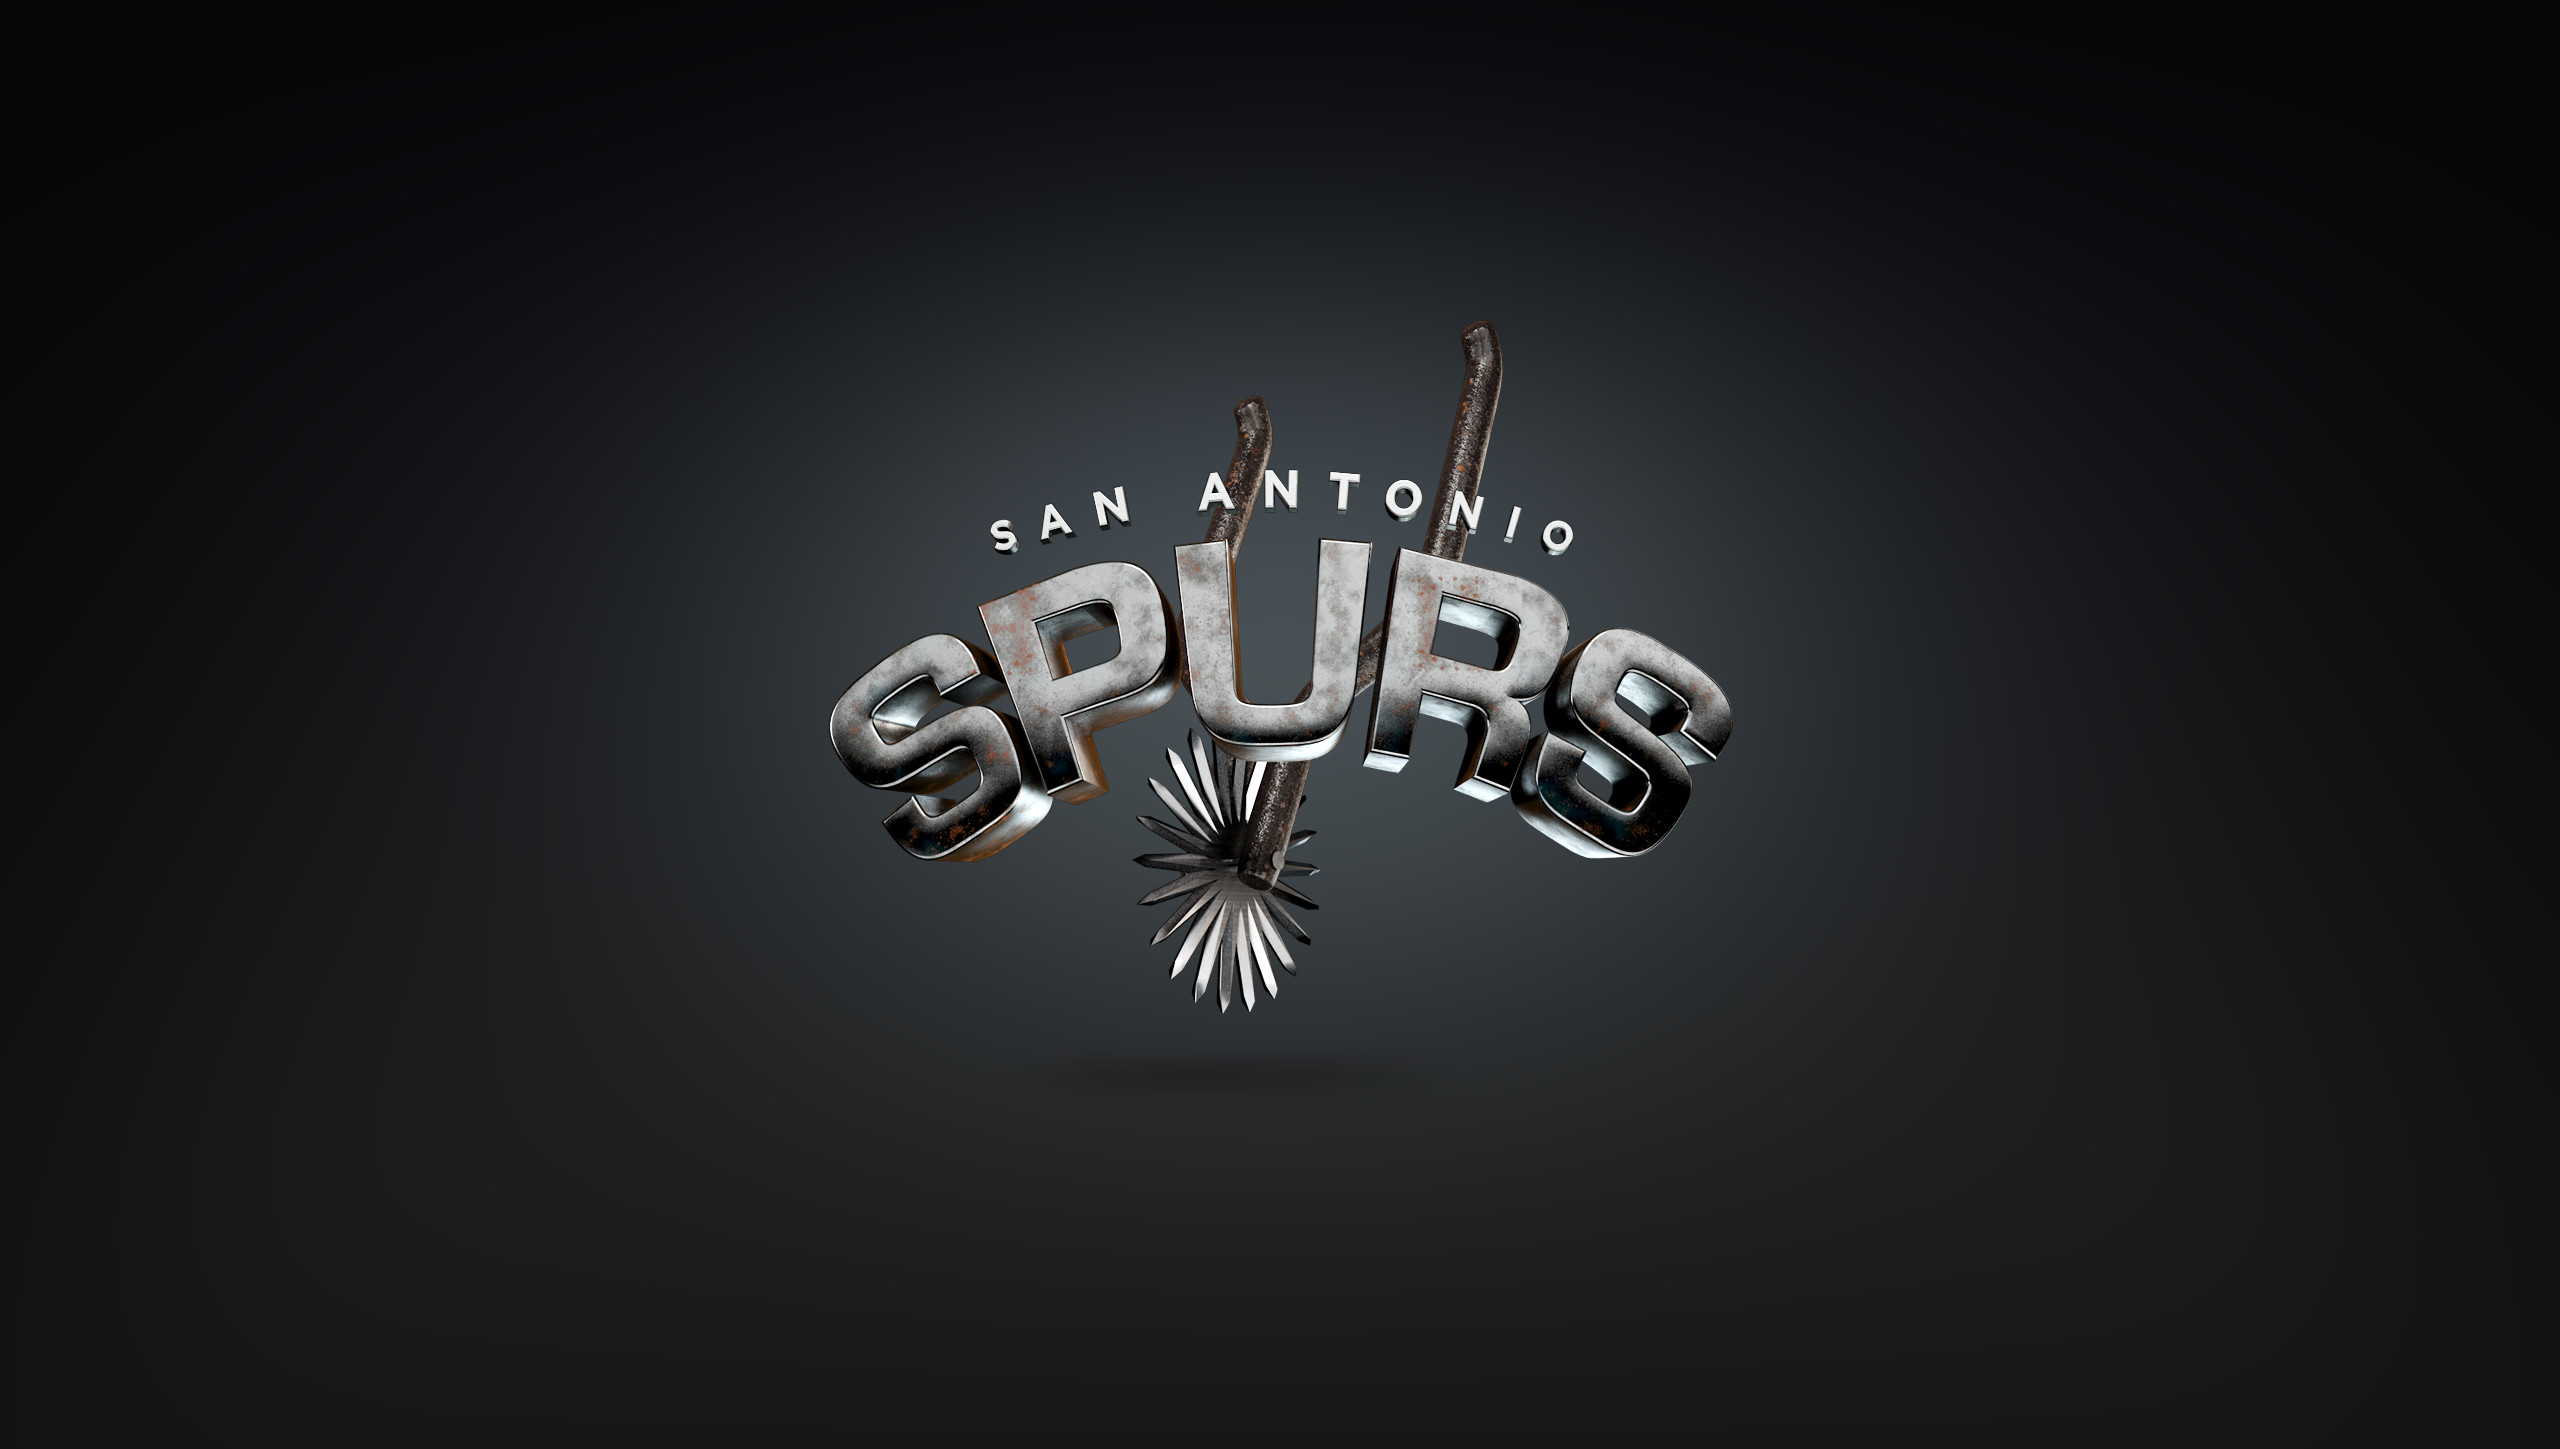 2560x1449 Spurs logo vector wallpaper hd Source Â· Photo Collection Spurs 3D Wallpaper  San Antonio ...